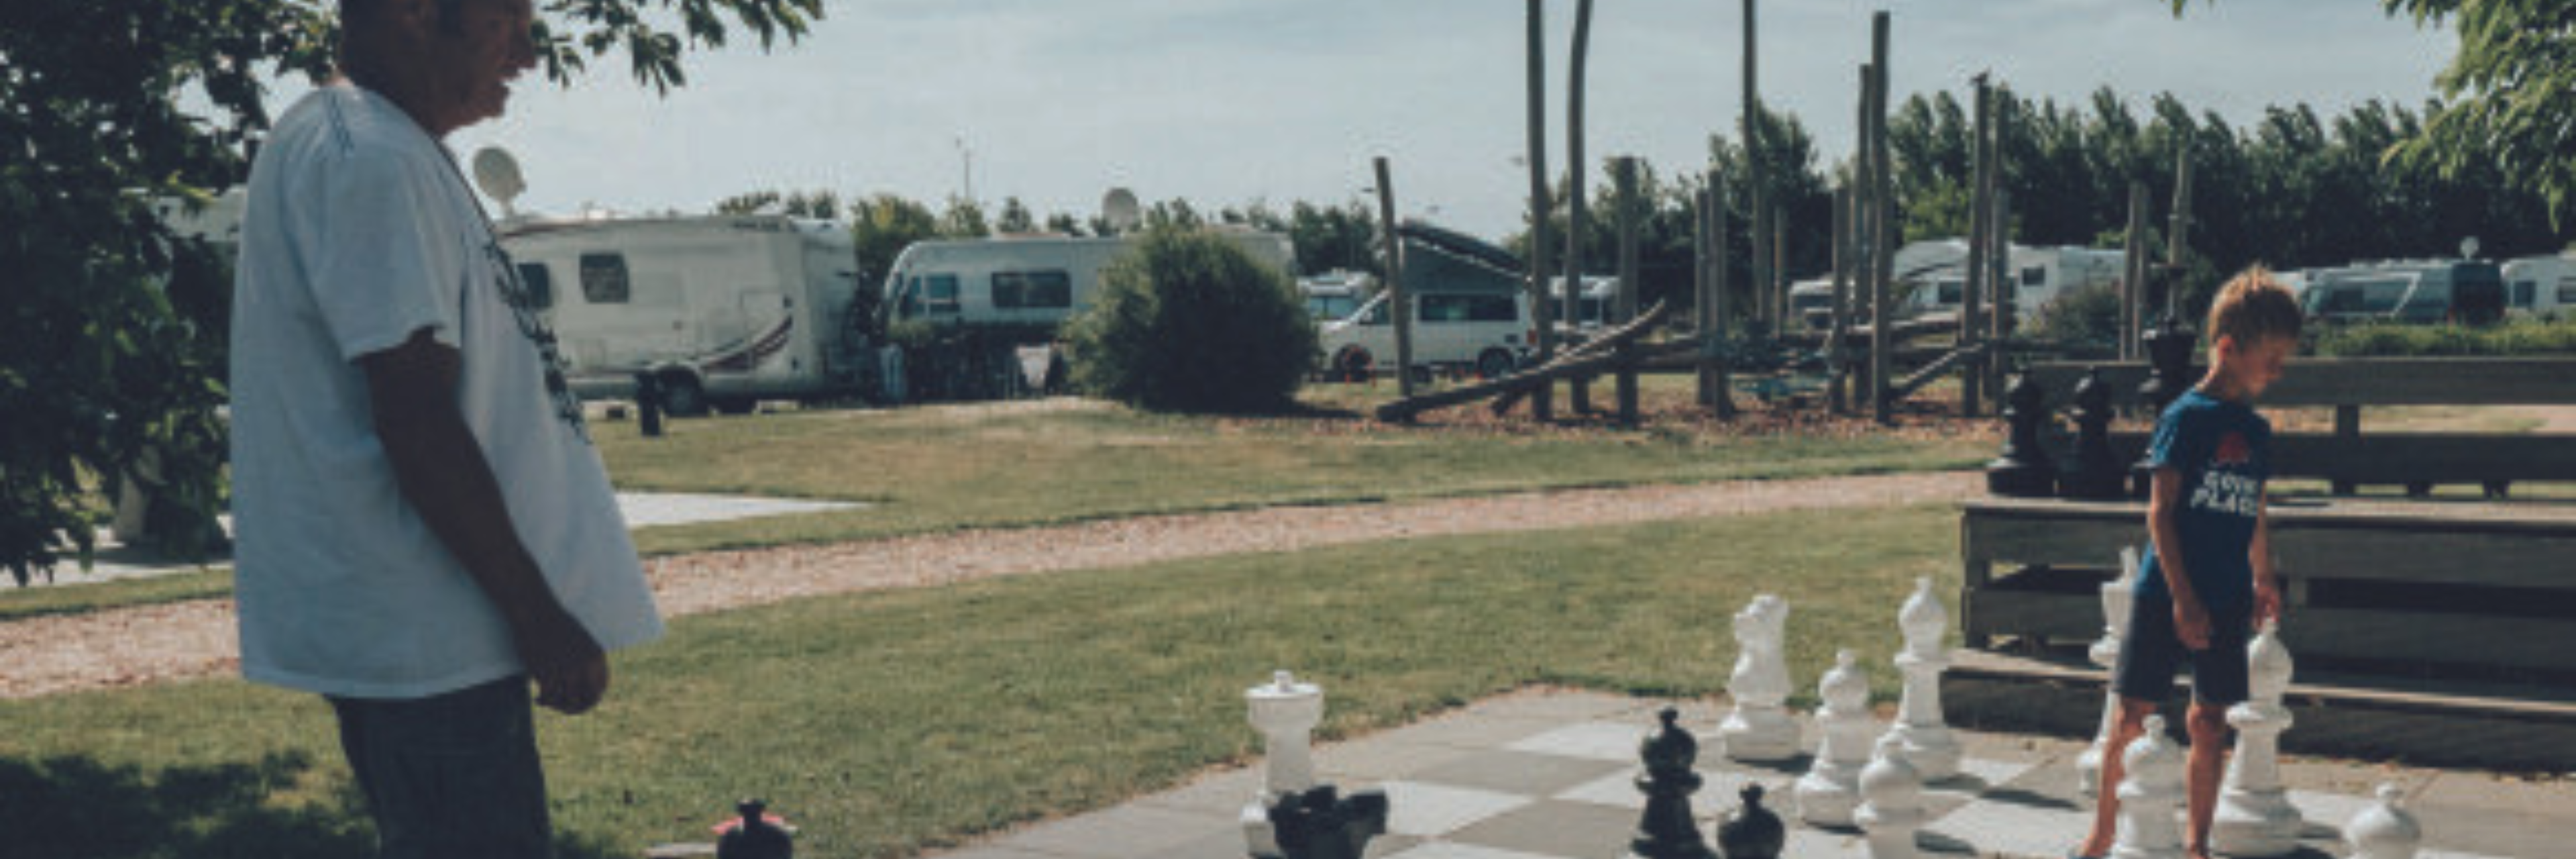 Een jongen en een man spelen met schaakstukken op een camping